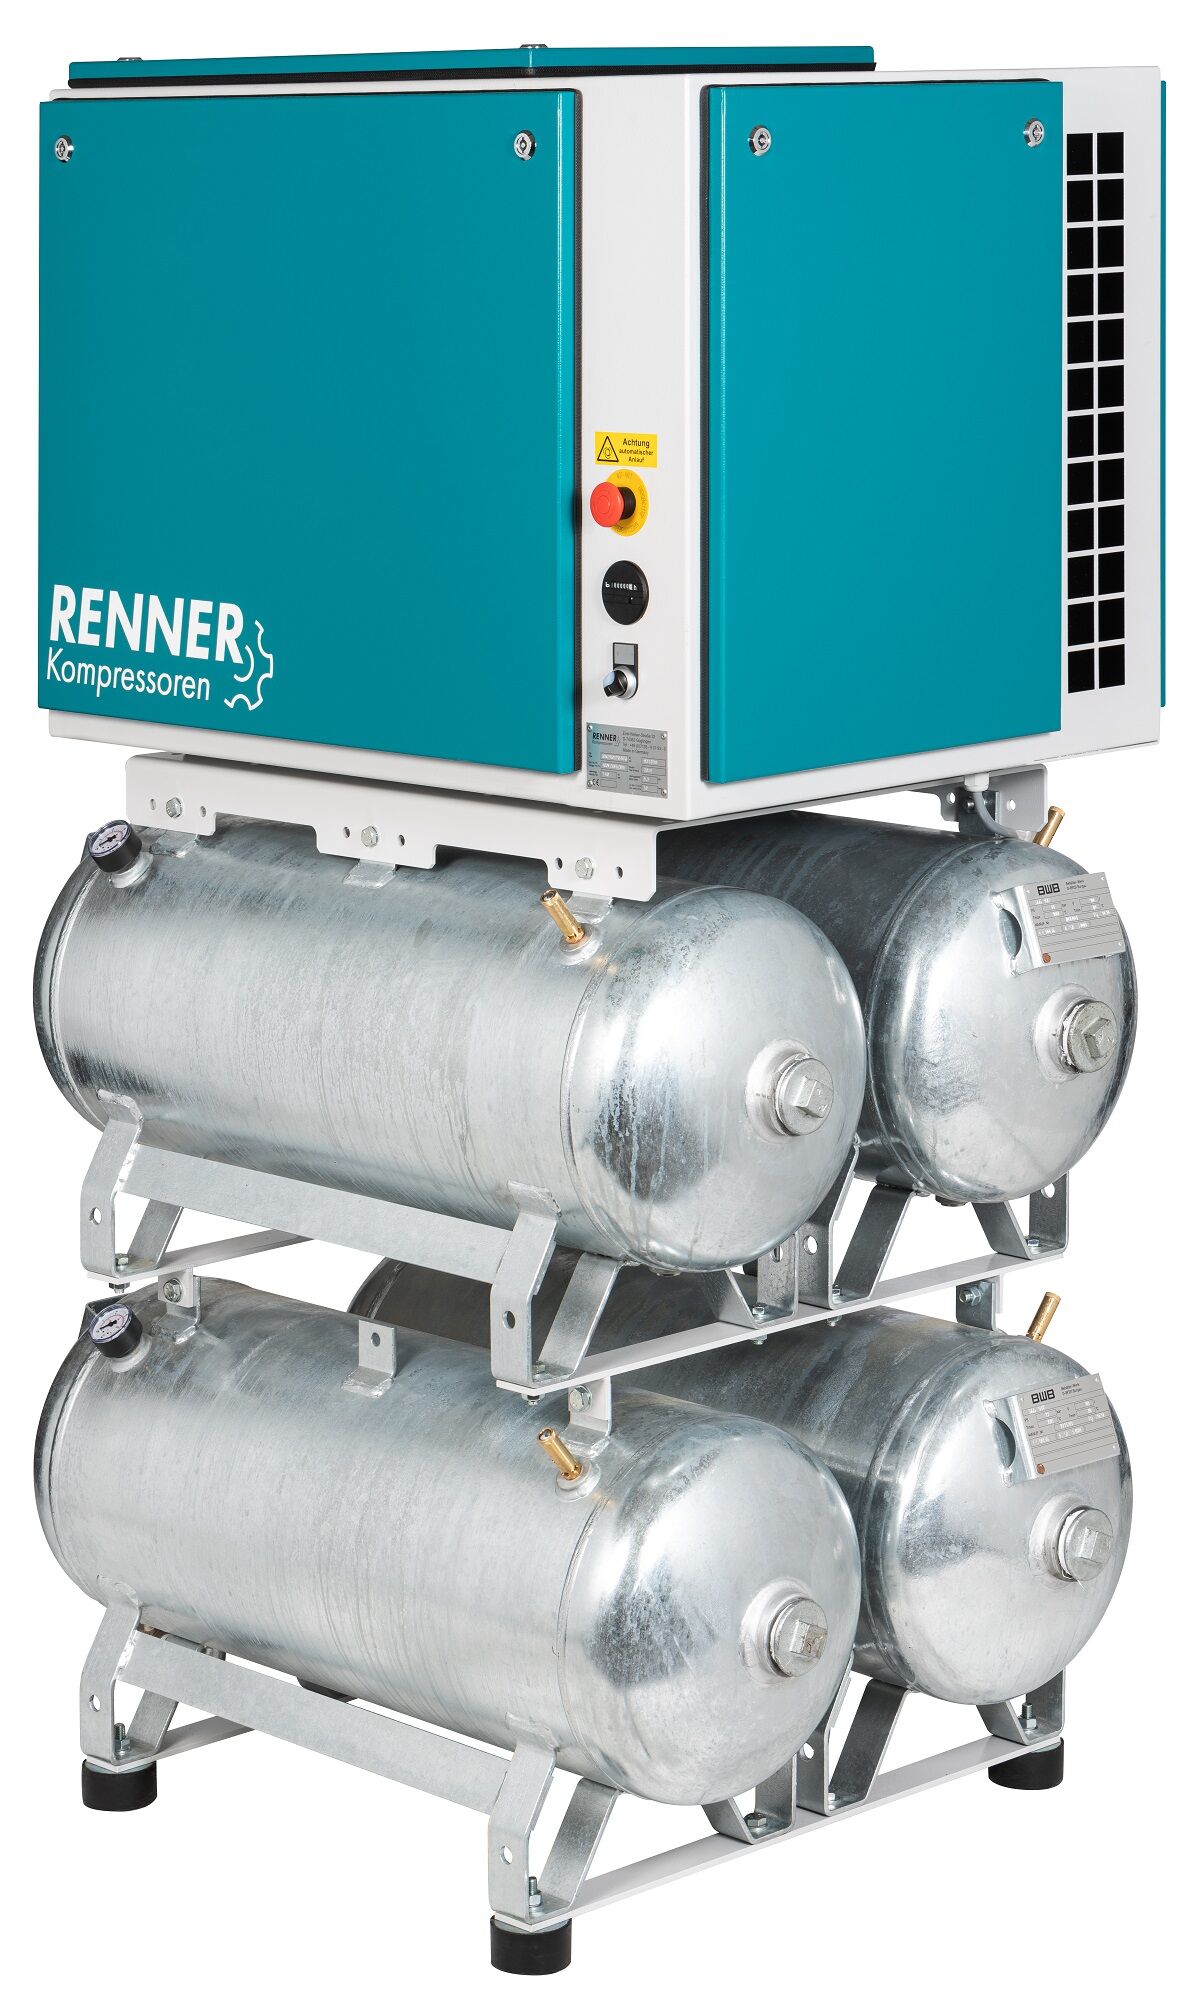 RENNER RIKO 960/4x90 S-KT Industrie-Kolbenkompressor 10 bar - Kesselan. zulassungsfrei, Kältetrockner